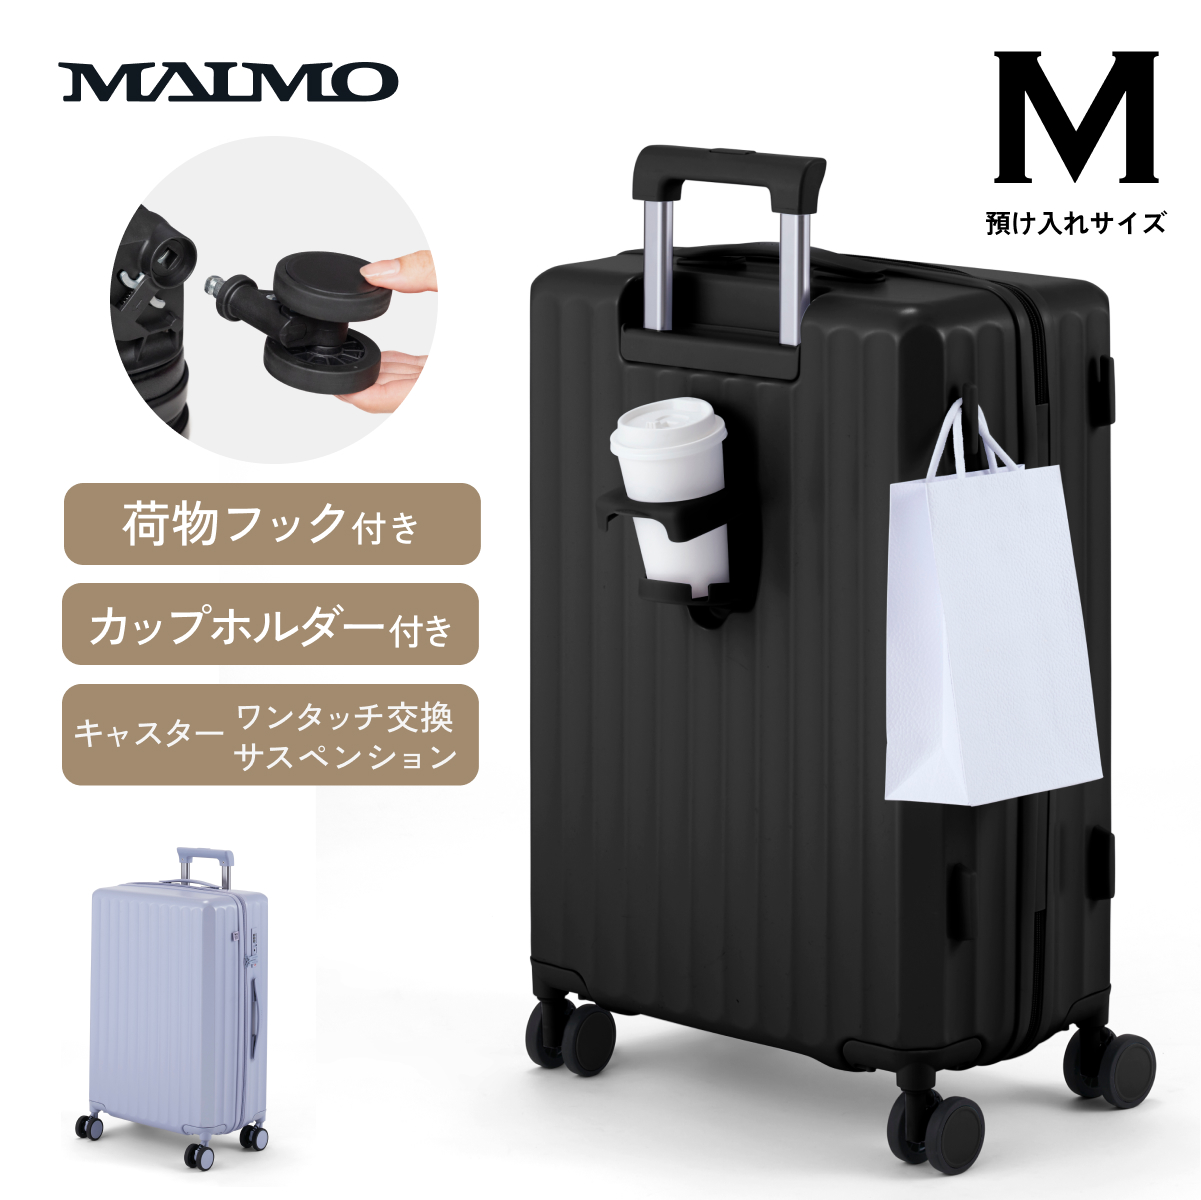 【送料無料】 MAIMO スーツケース カップホルダー フック付き サスペンション 日本企業 キャリ...